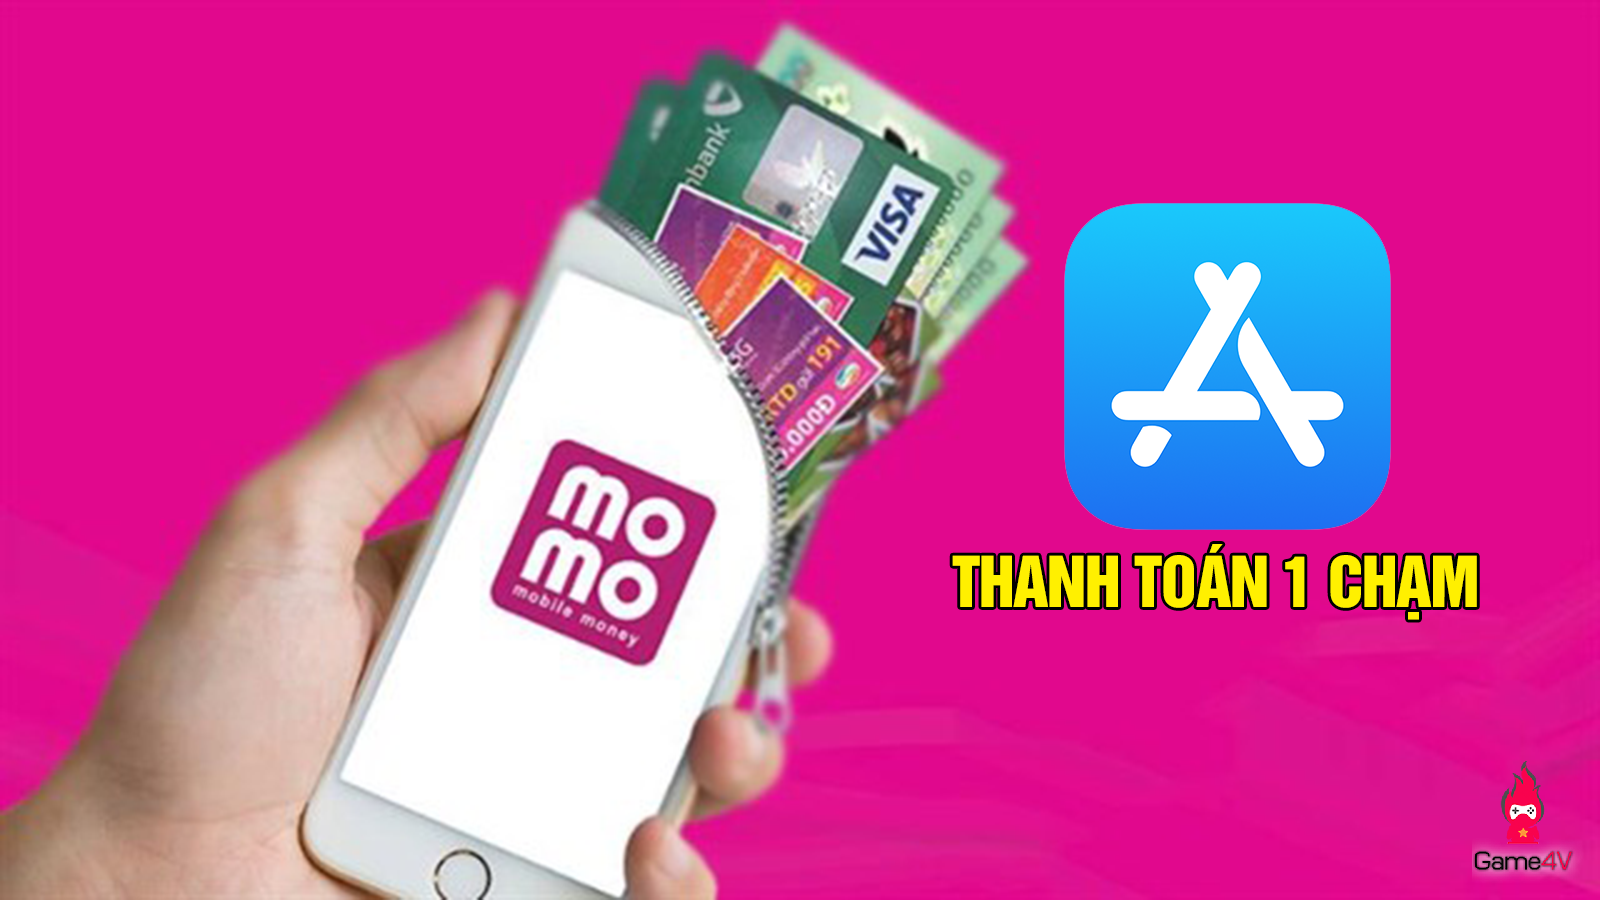 Tin vui cho game thủ, ví Điện tử MoMo đã có thể thanh toán trực tiếp 1 chạm với App Store